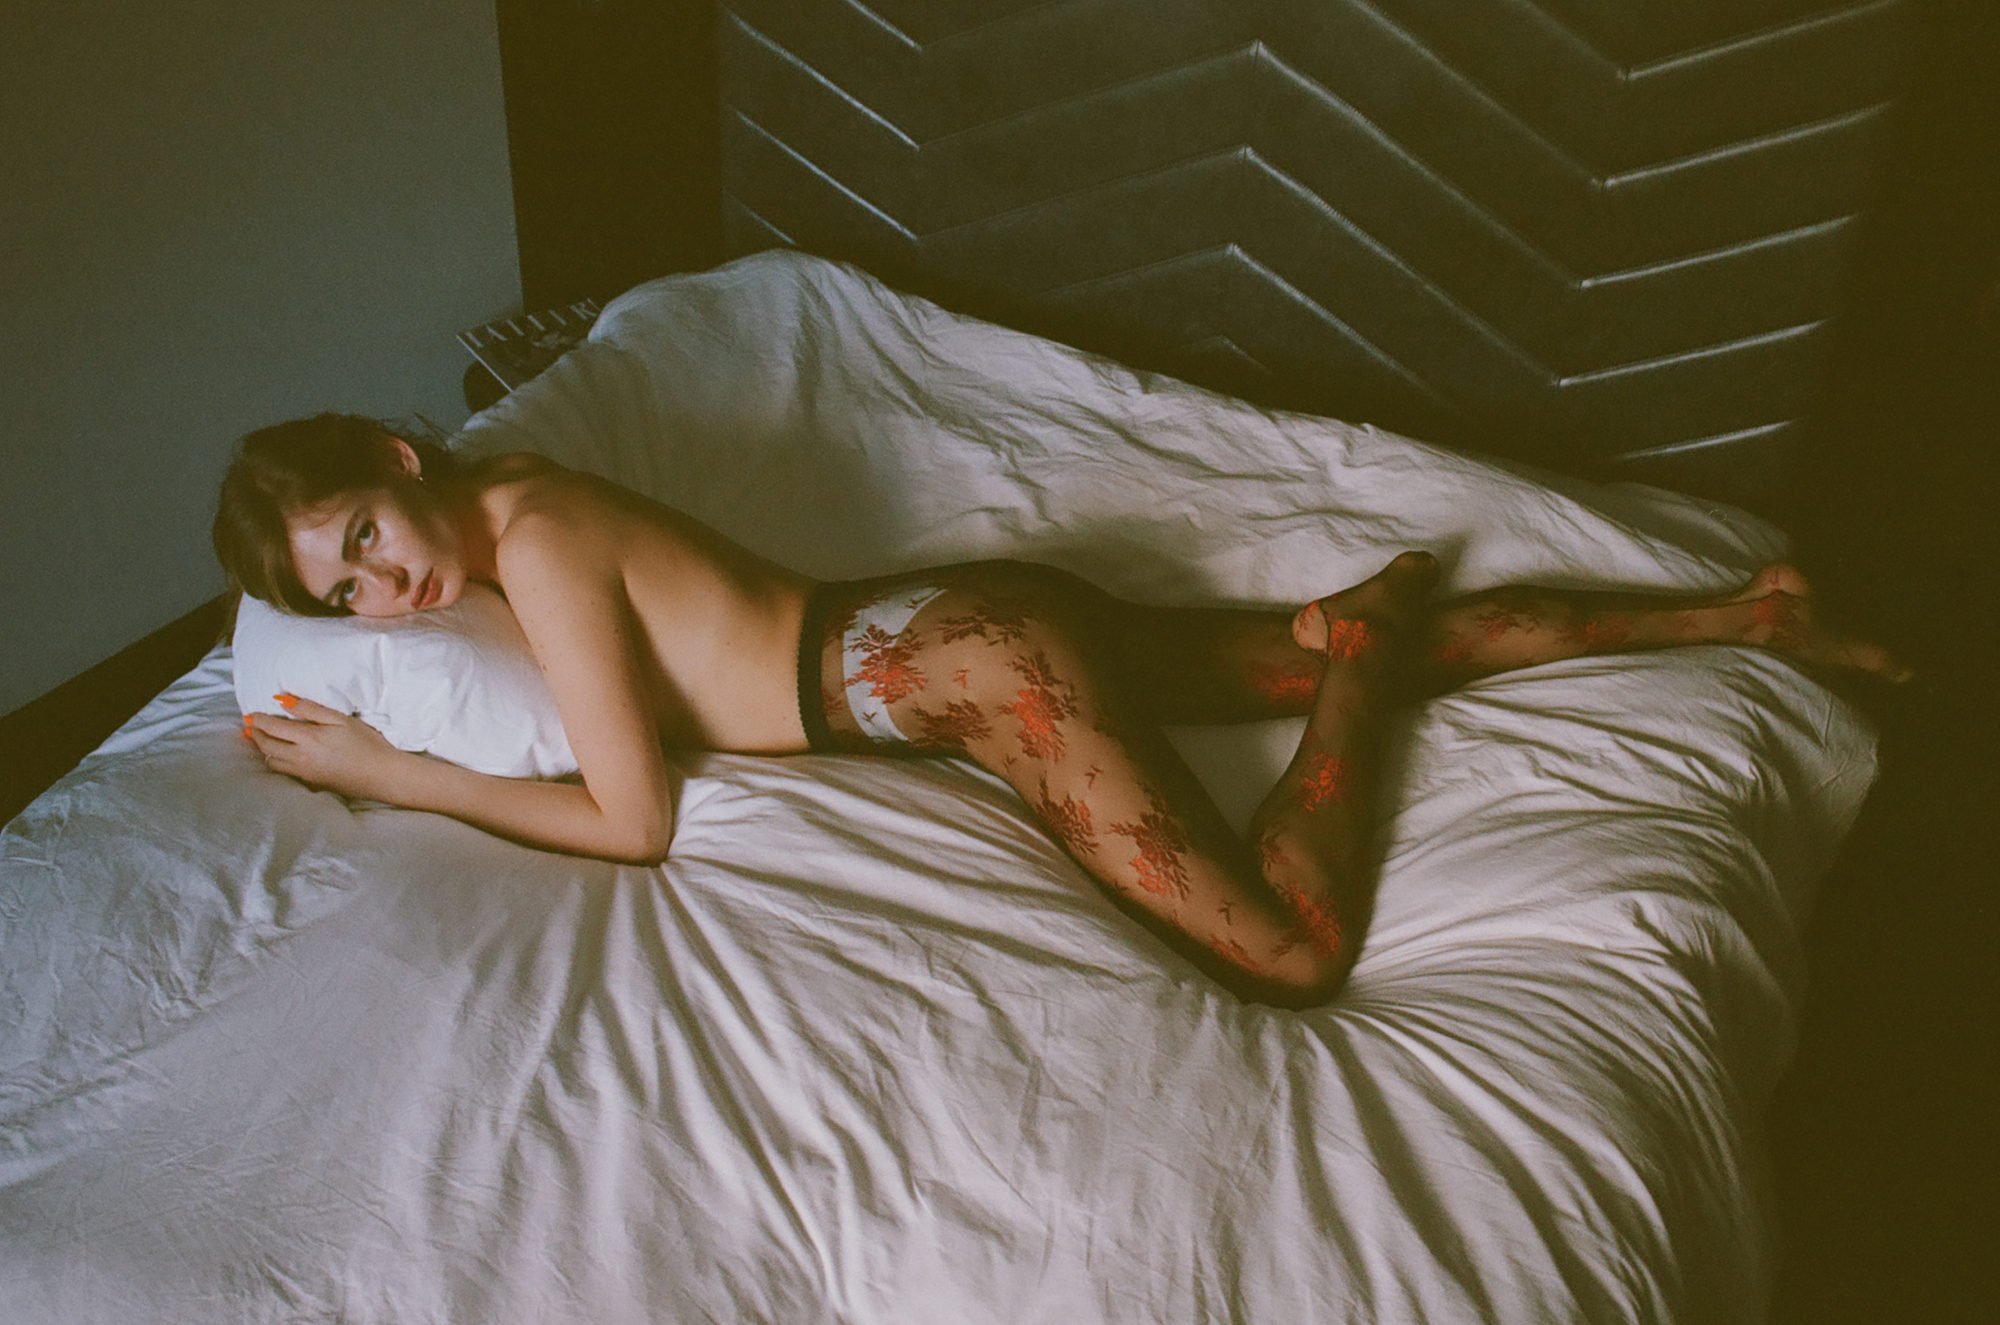 Кристина бардаш голая (28 фото) - Порно фото голых девушек